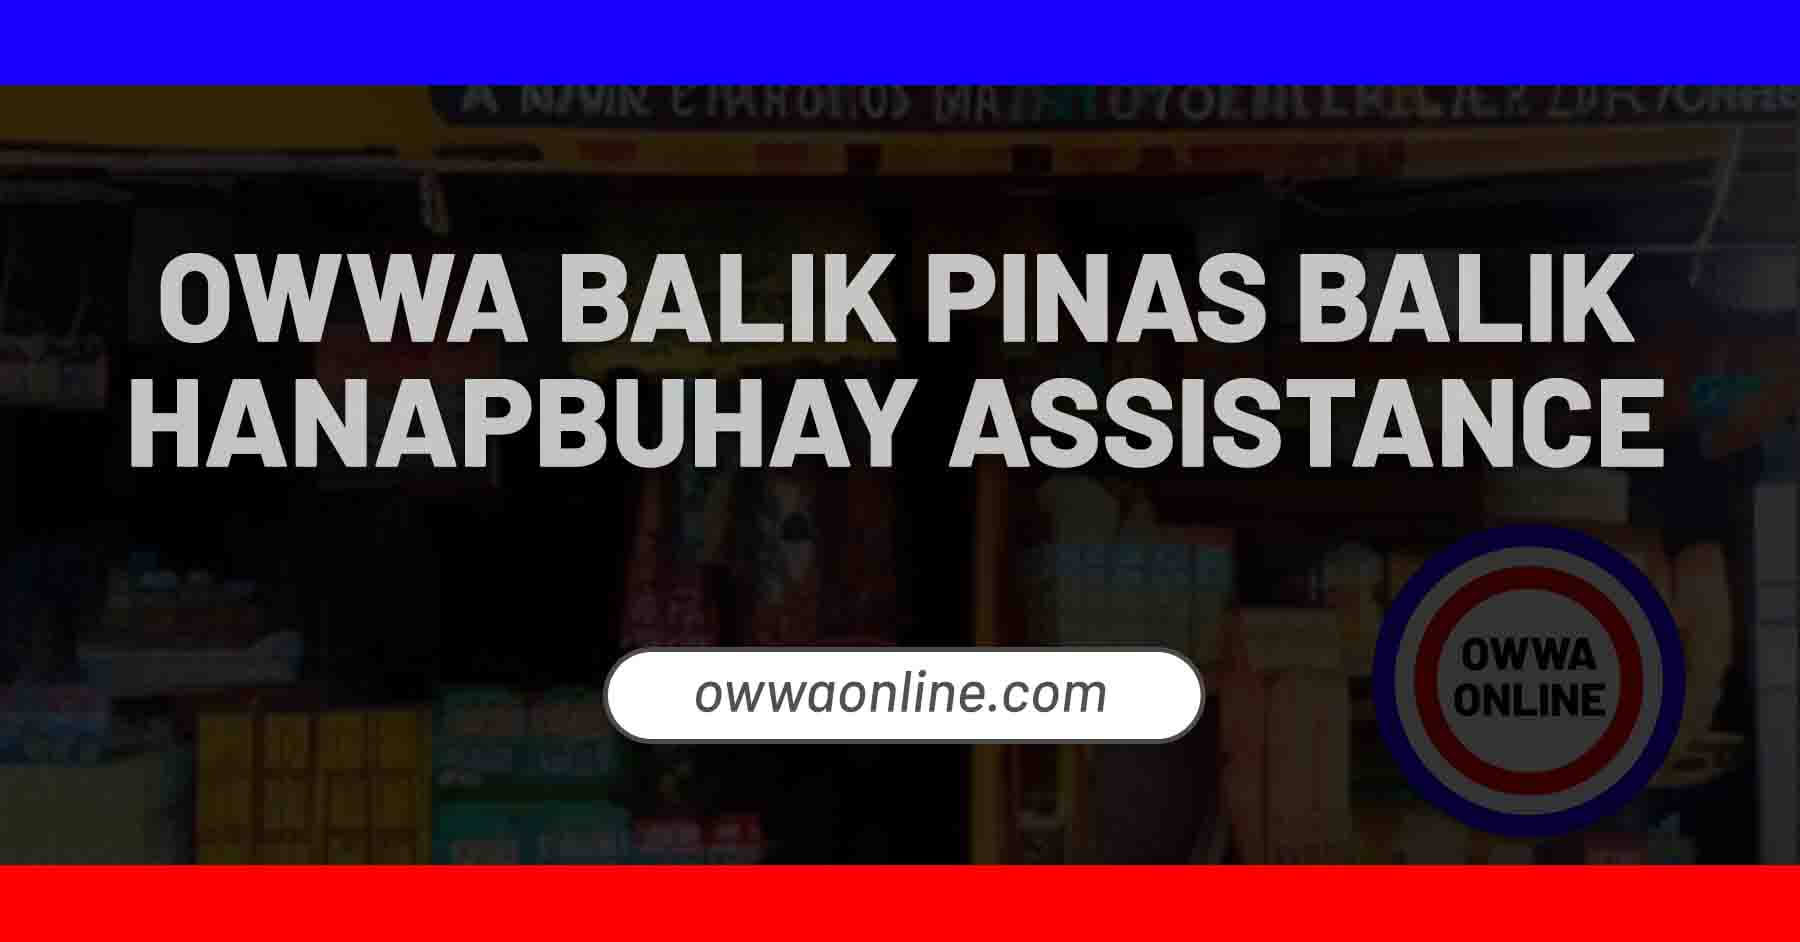 OWWA Balik Pinas Balik Hanapbuhay Financial Assistance